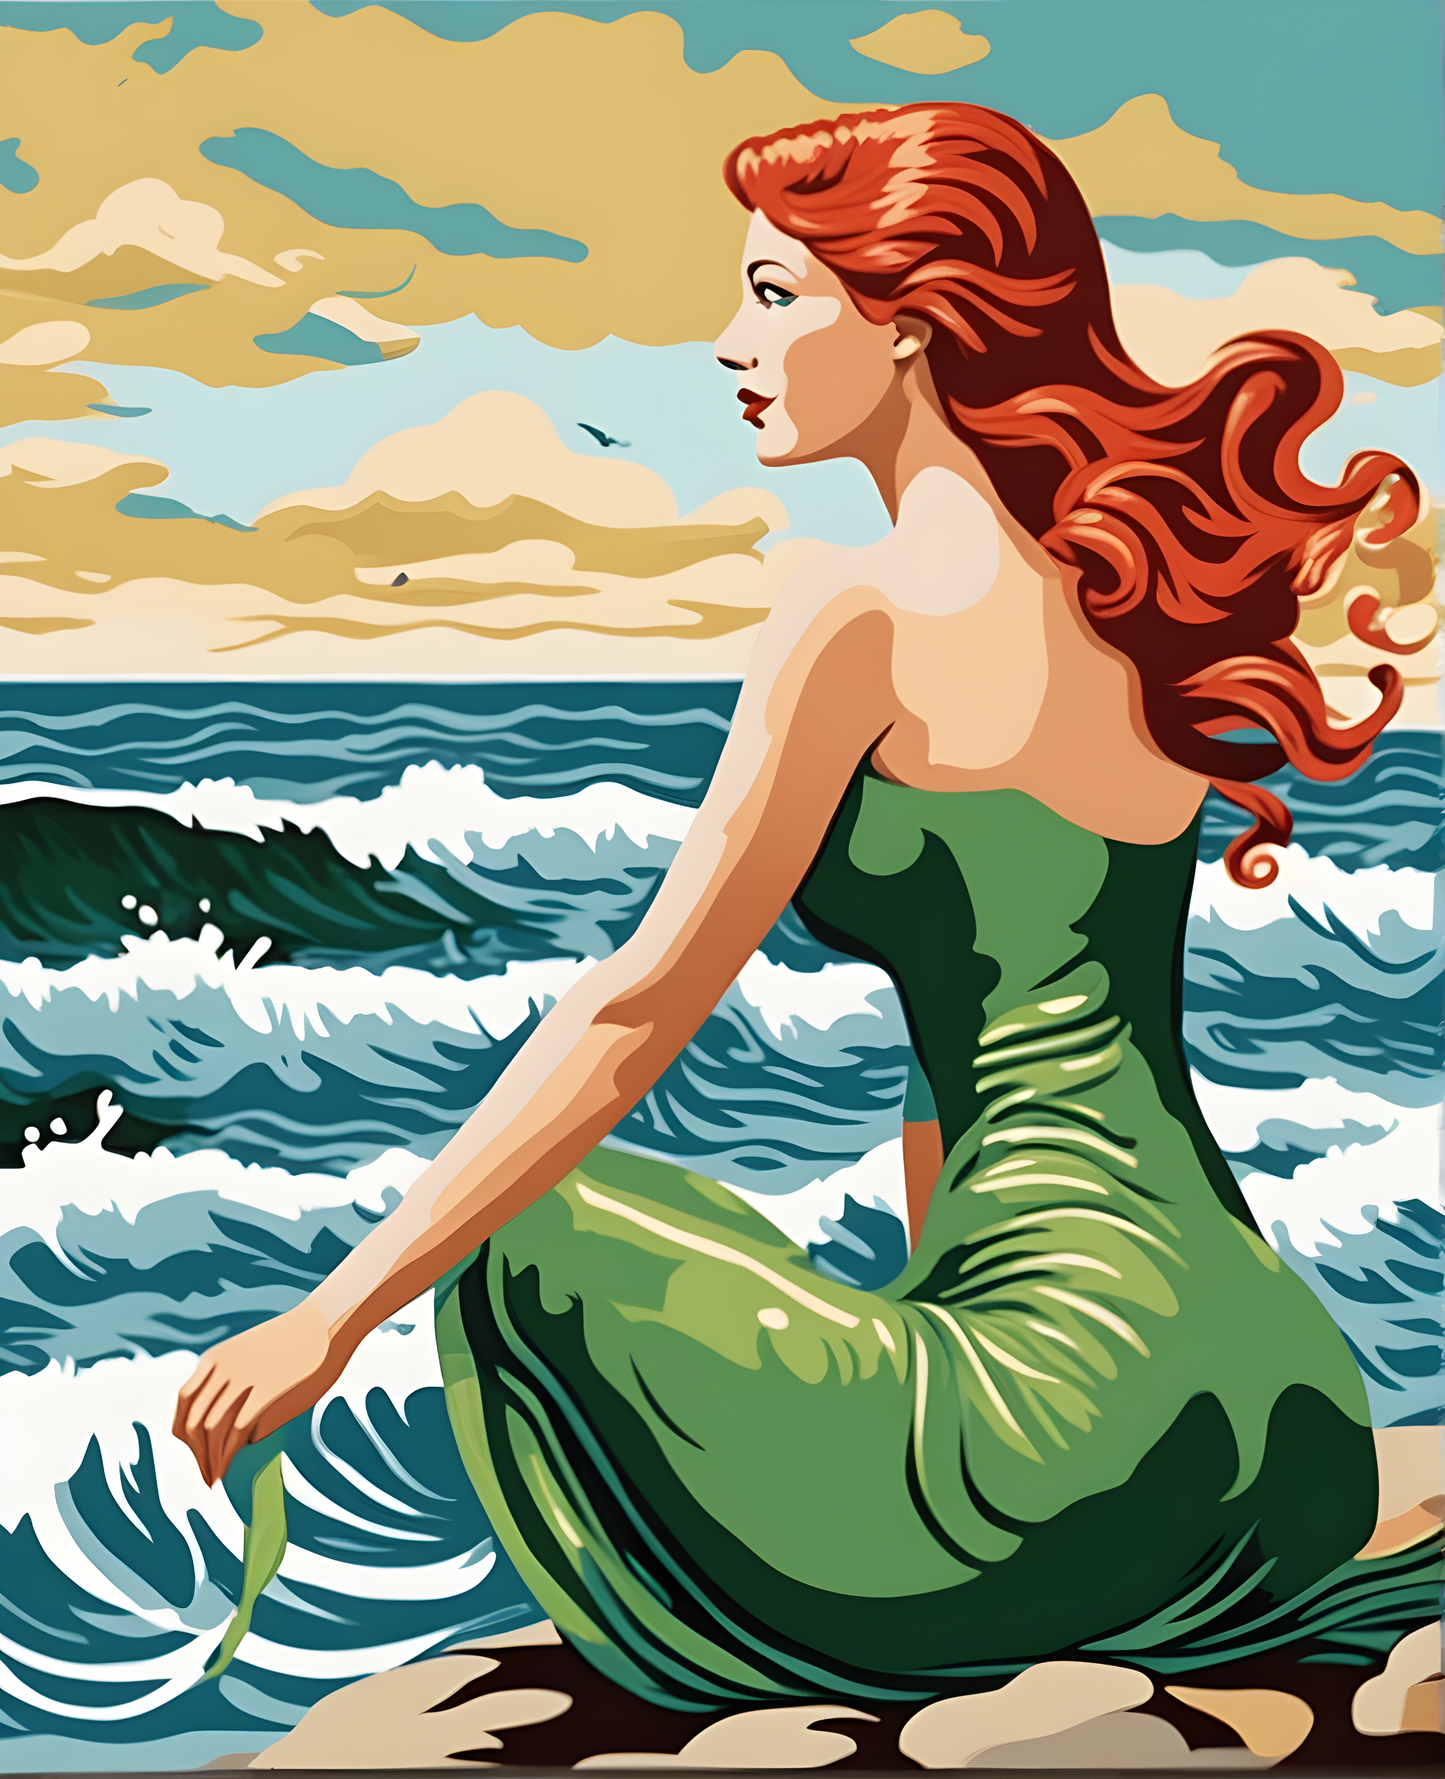 Redhead Mermaid (3) - Van-Go Paint-By-Number Kit